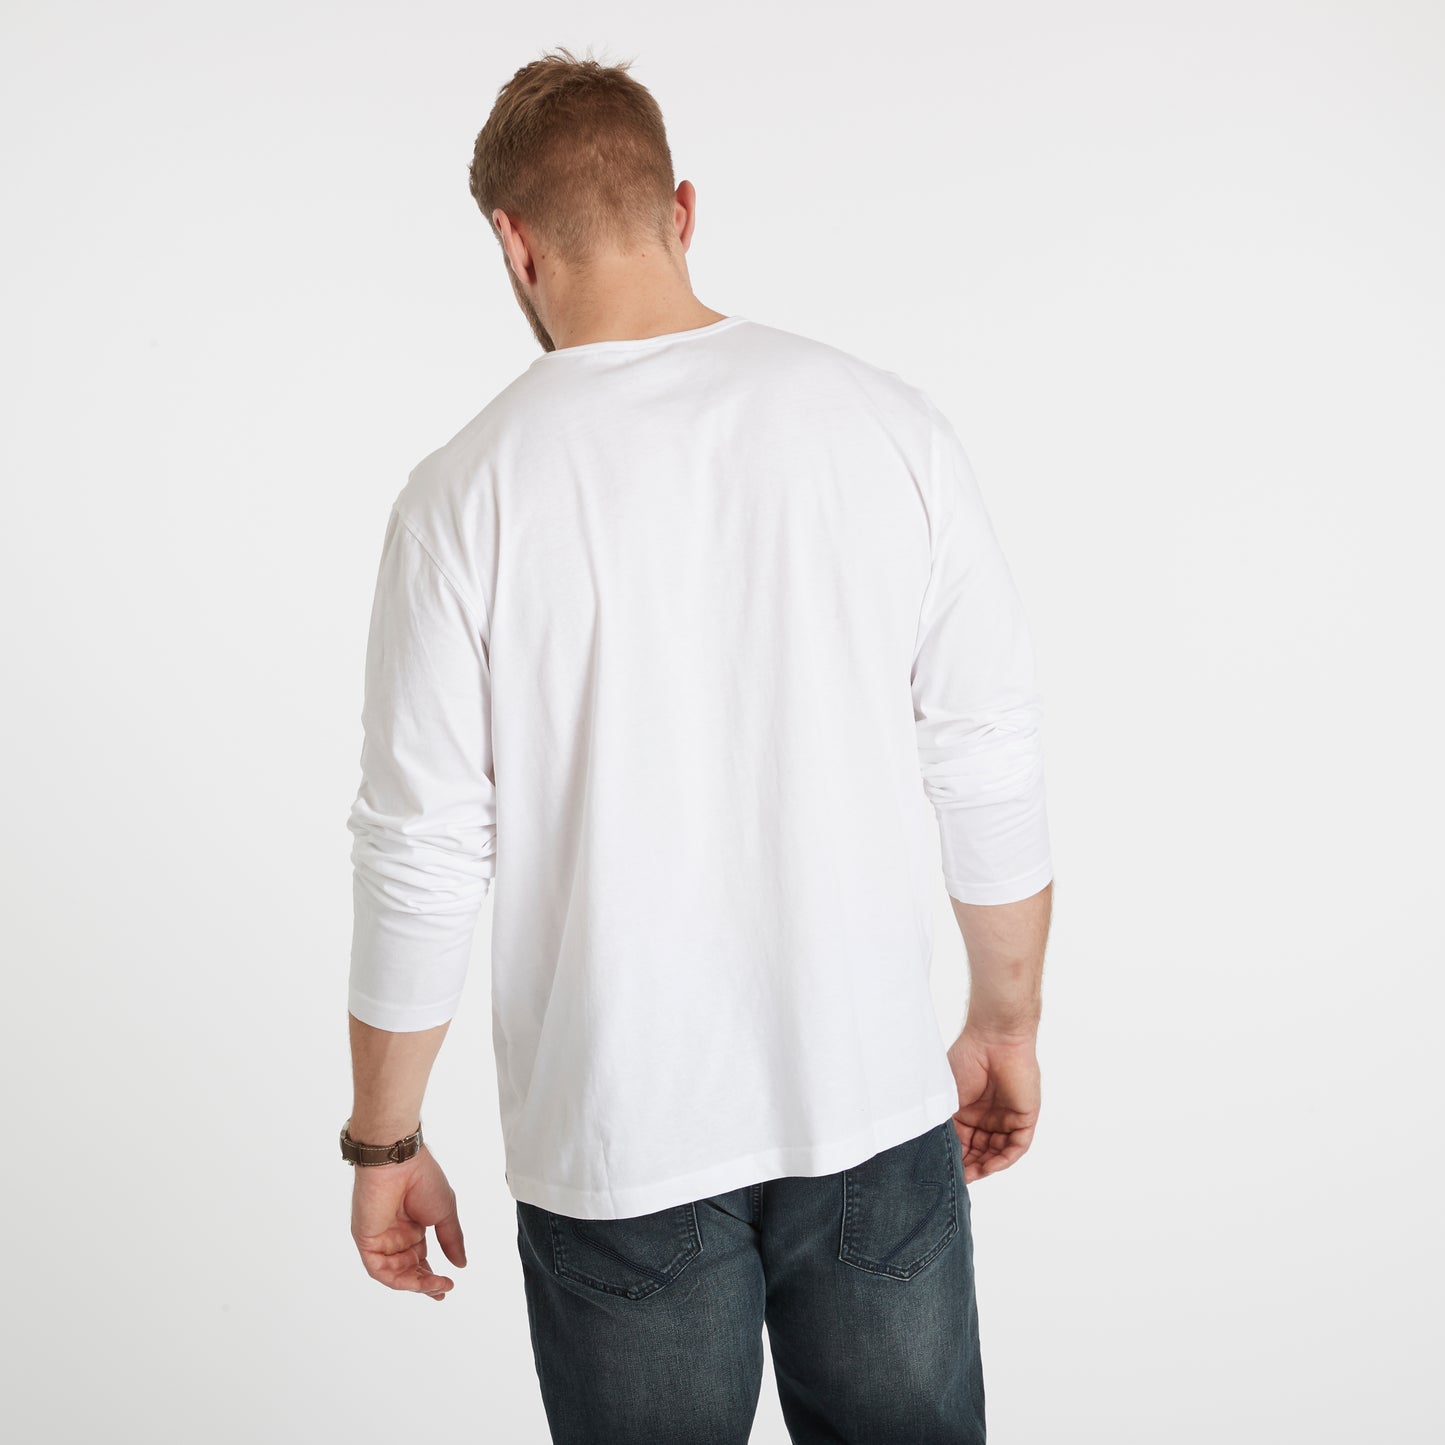 hvit langermet tskjorte i store størrelser